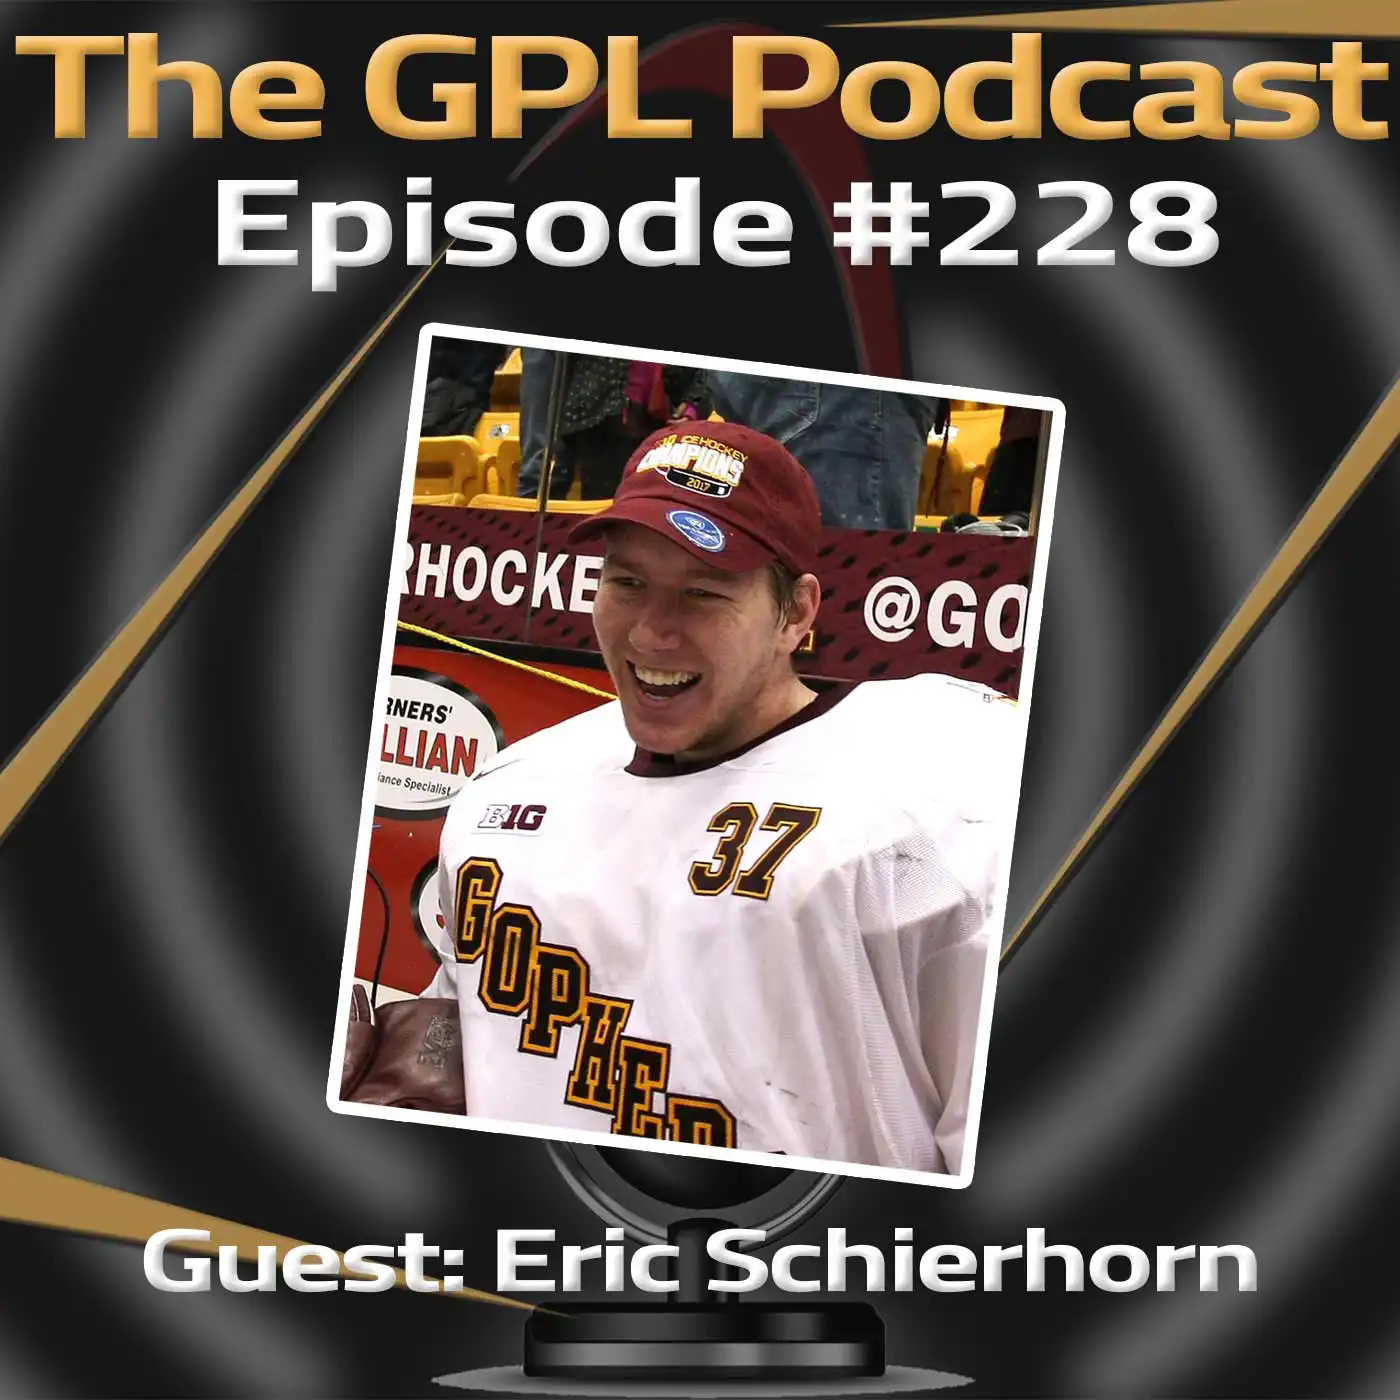 GPL Podcast #228: Guest – Eric Schierhorn